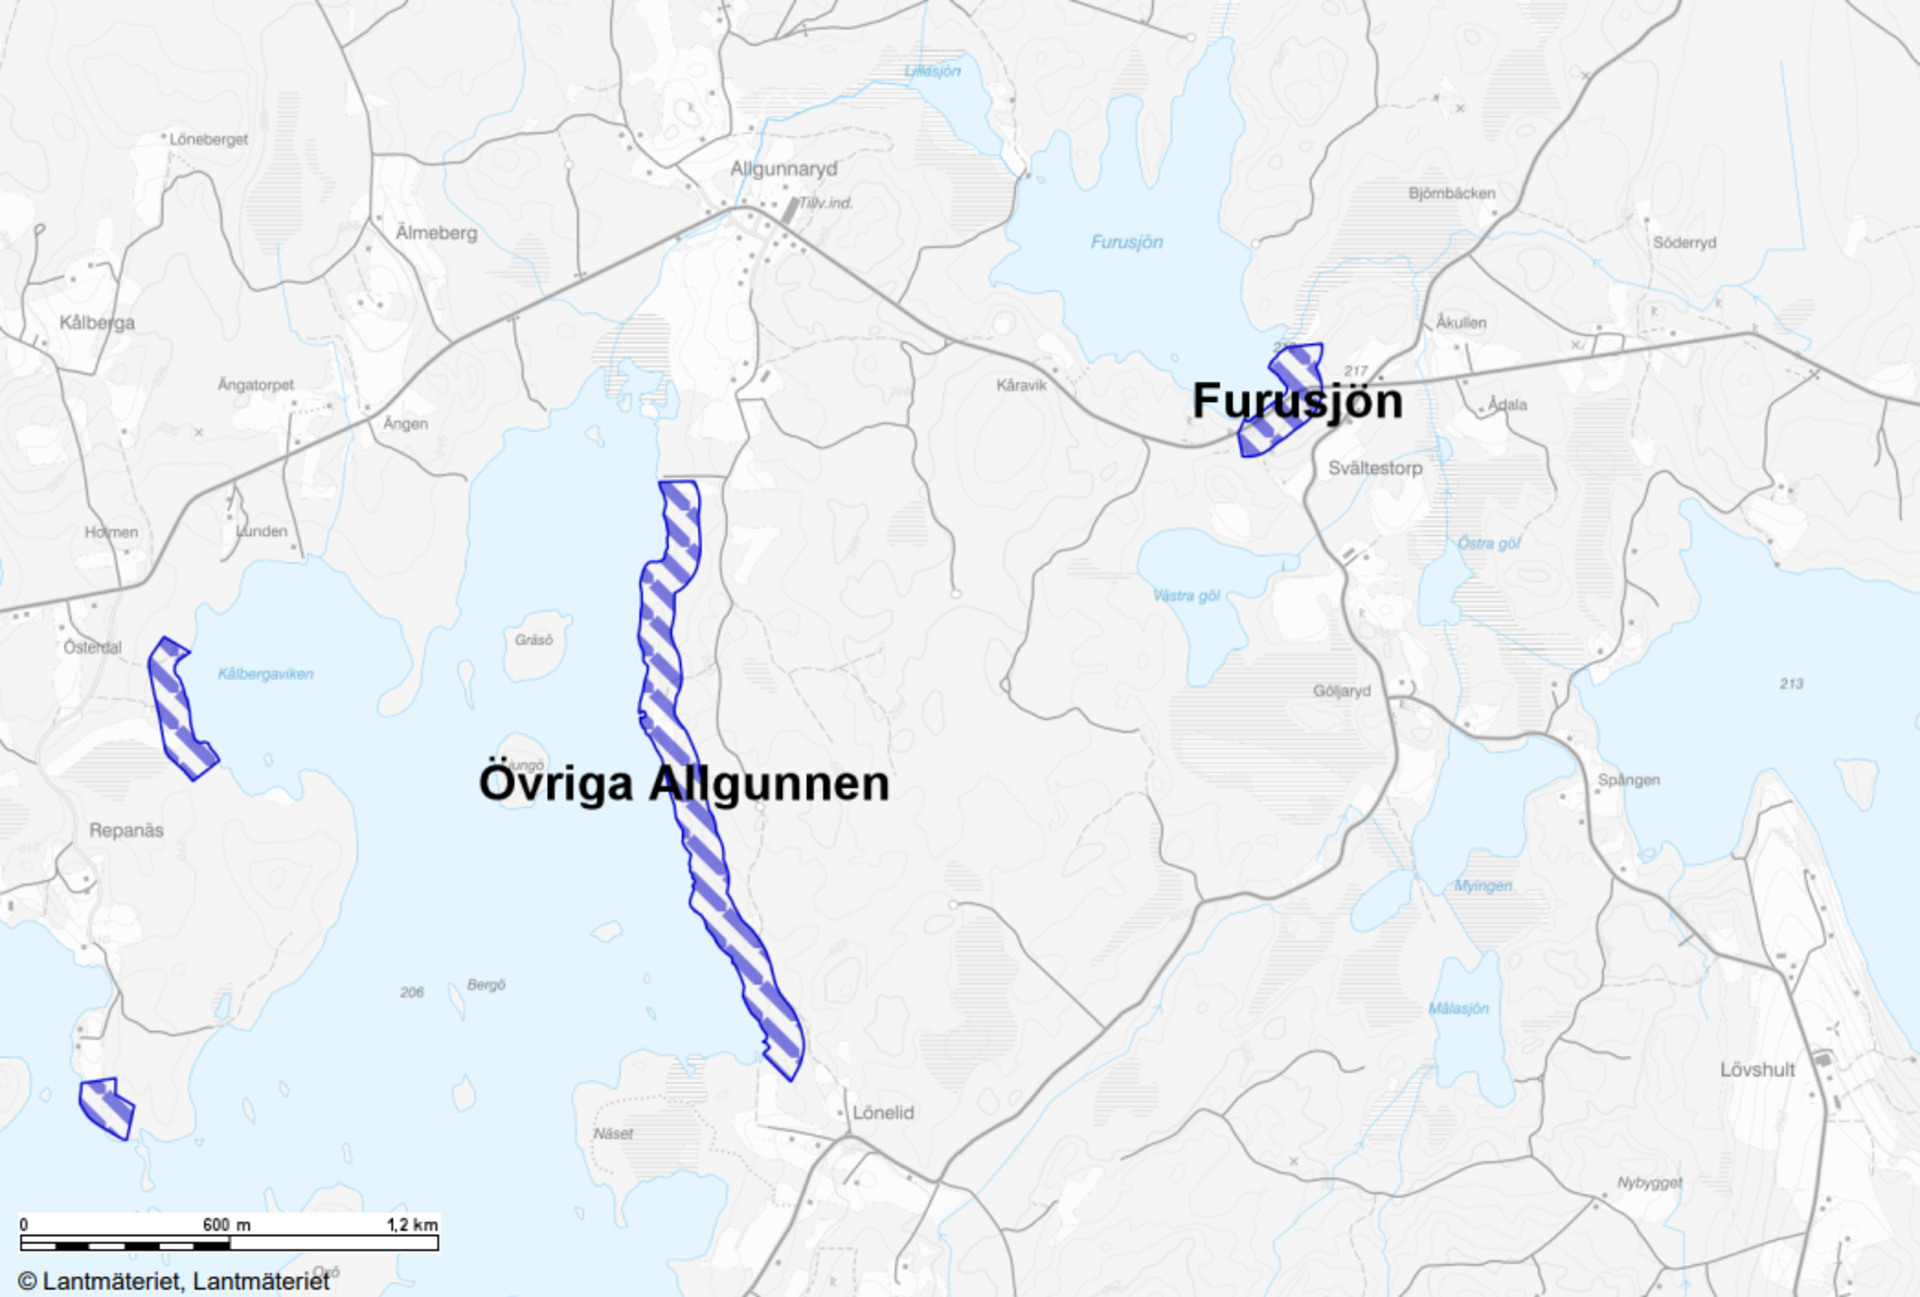 Karta över LIS-områdena Övriga Allgunnen och Furusjön.